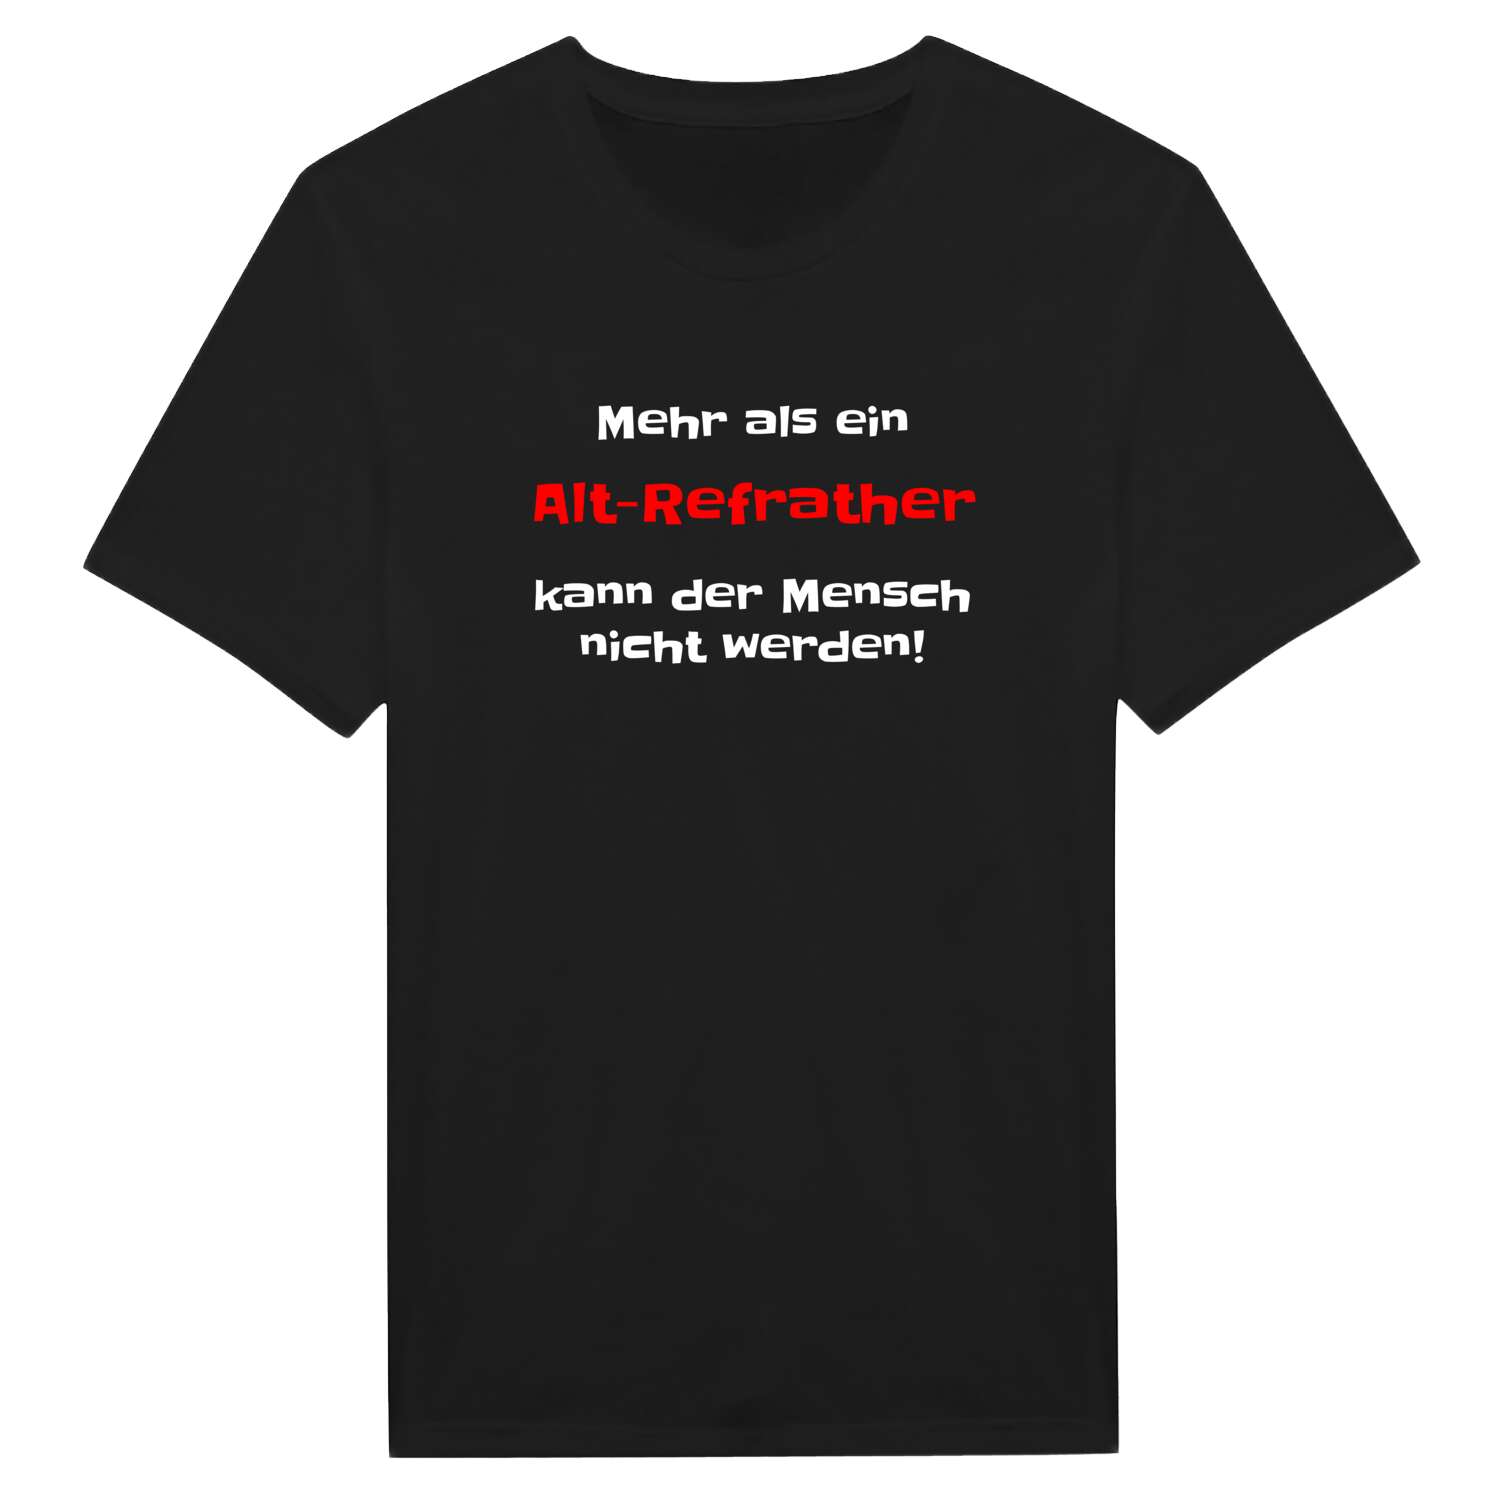 Alt-Refrath T-Shirt »Mehr als ein«